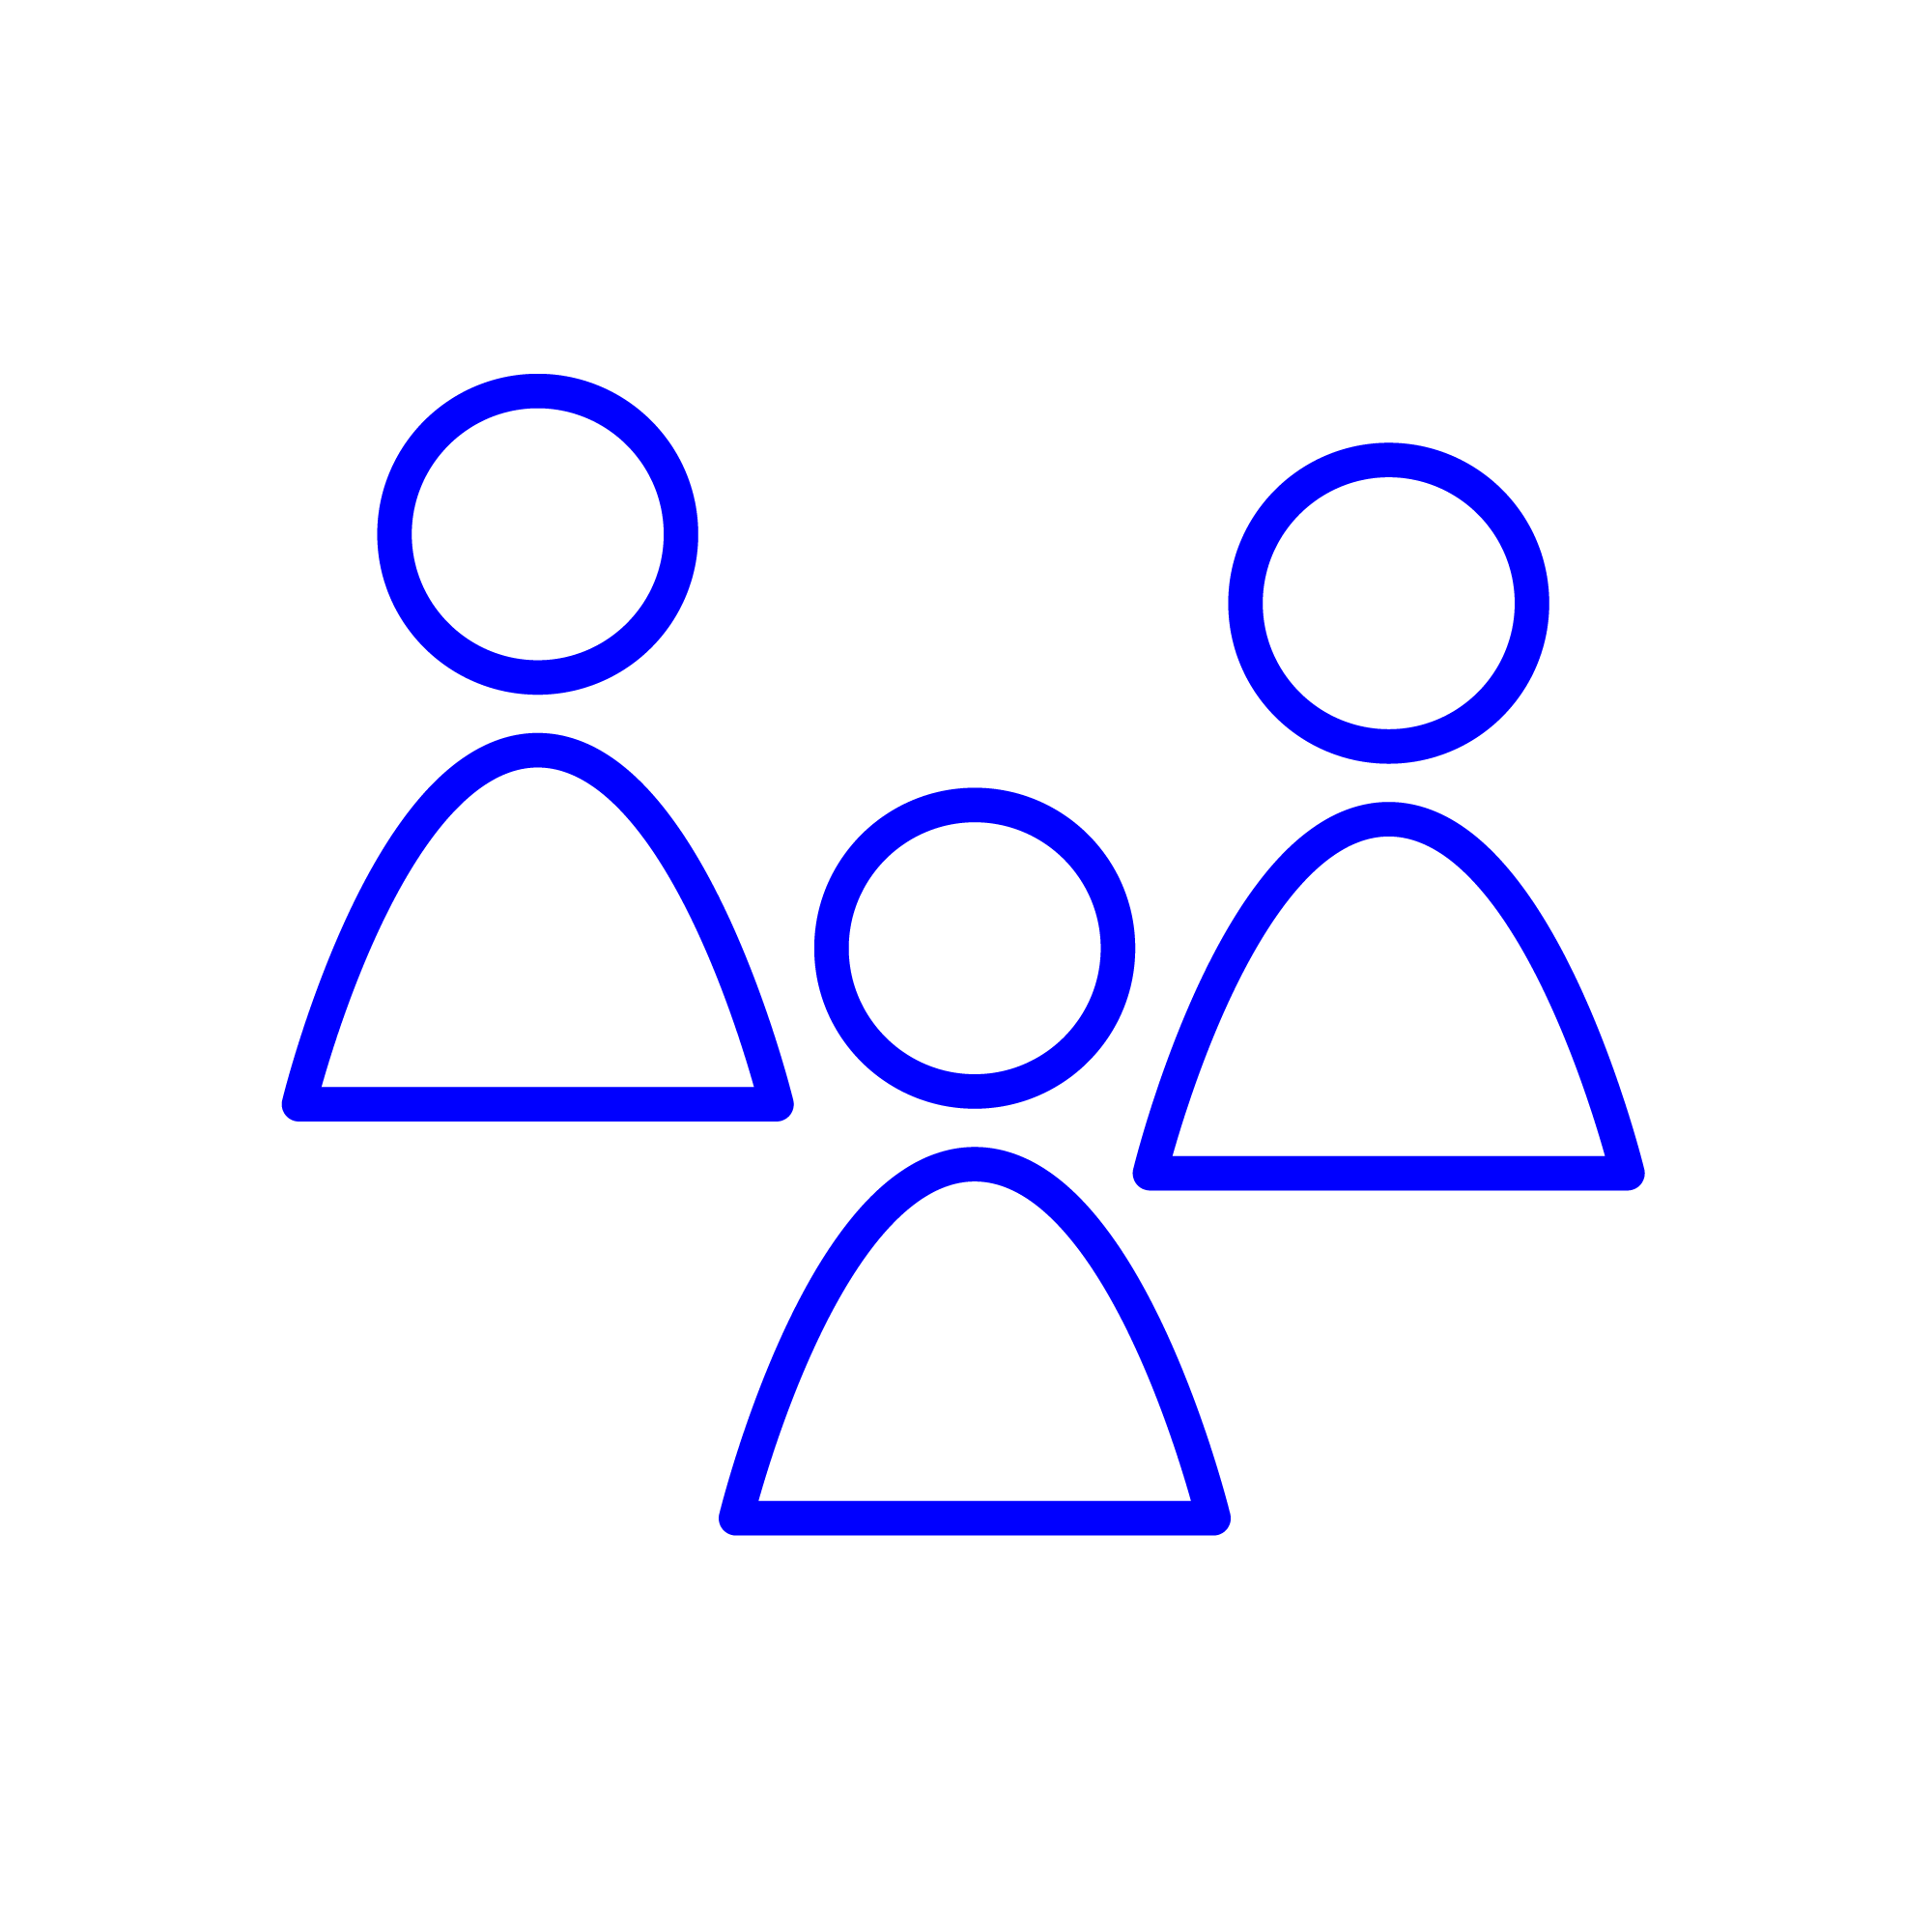 Abstrakte grafische Darstellung dreier Personen als Symbol für einen Workshop